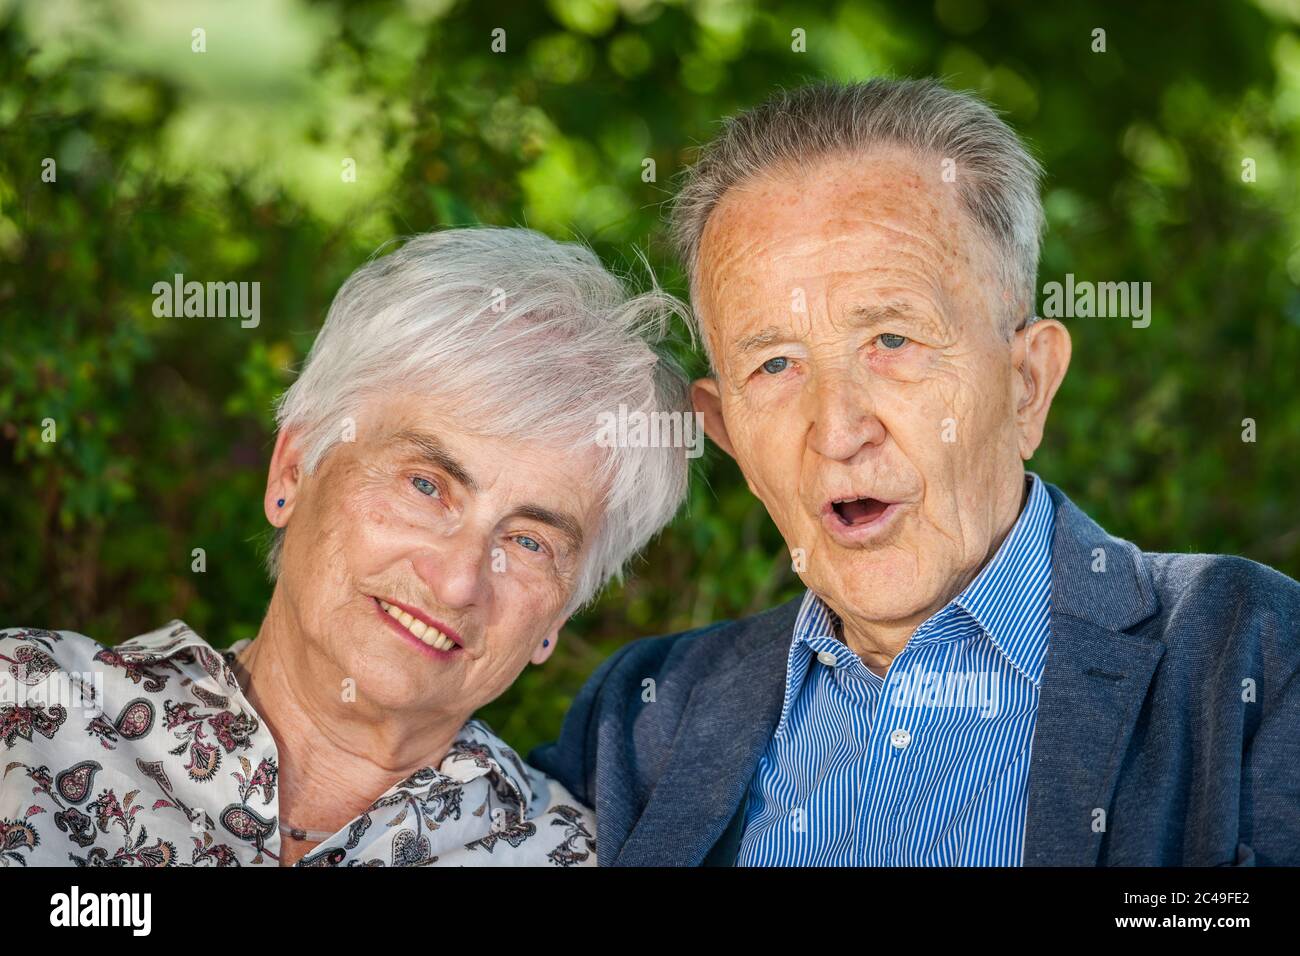 Portrait tête-et-épaule d'un couple de retraités âgés devant des feuilles vertes en été regardant avec joie la caméra. Homme avec la bouche ouverte. Banque D'Images